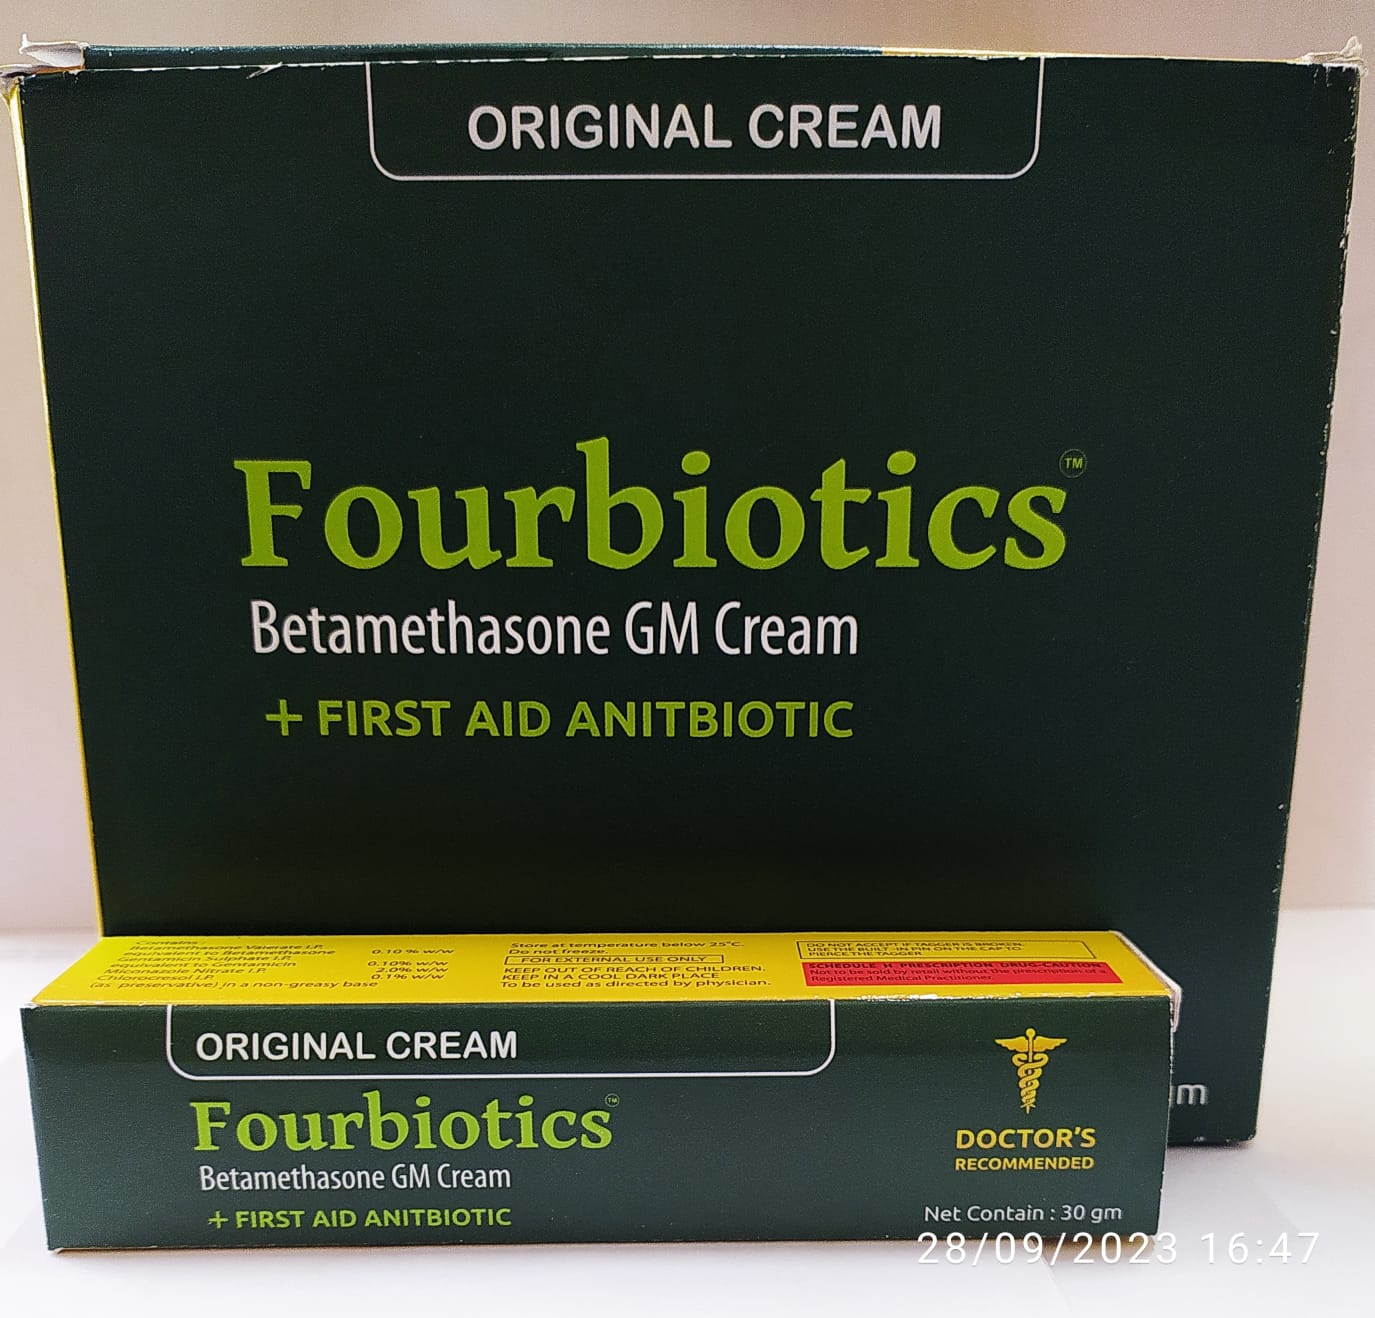 Fourbiotics Betamethasone GM Cream